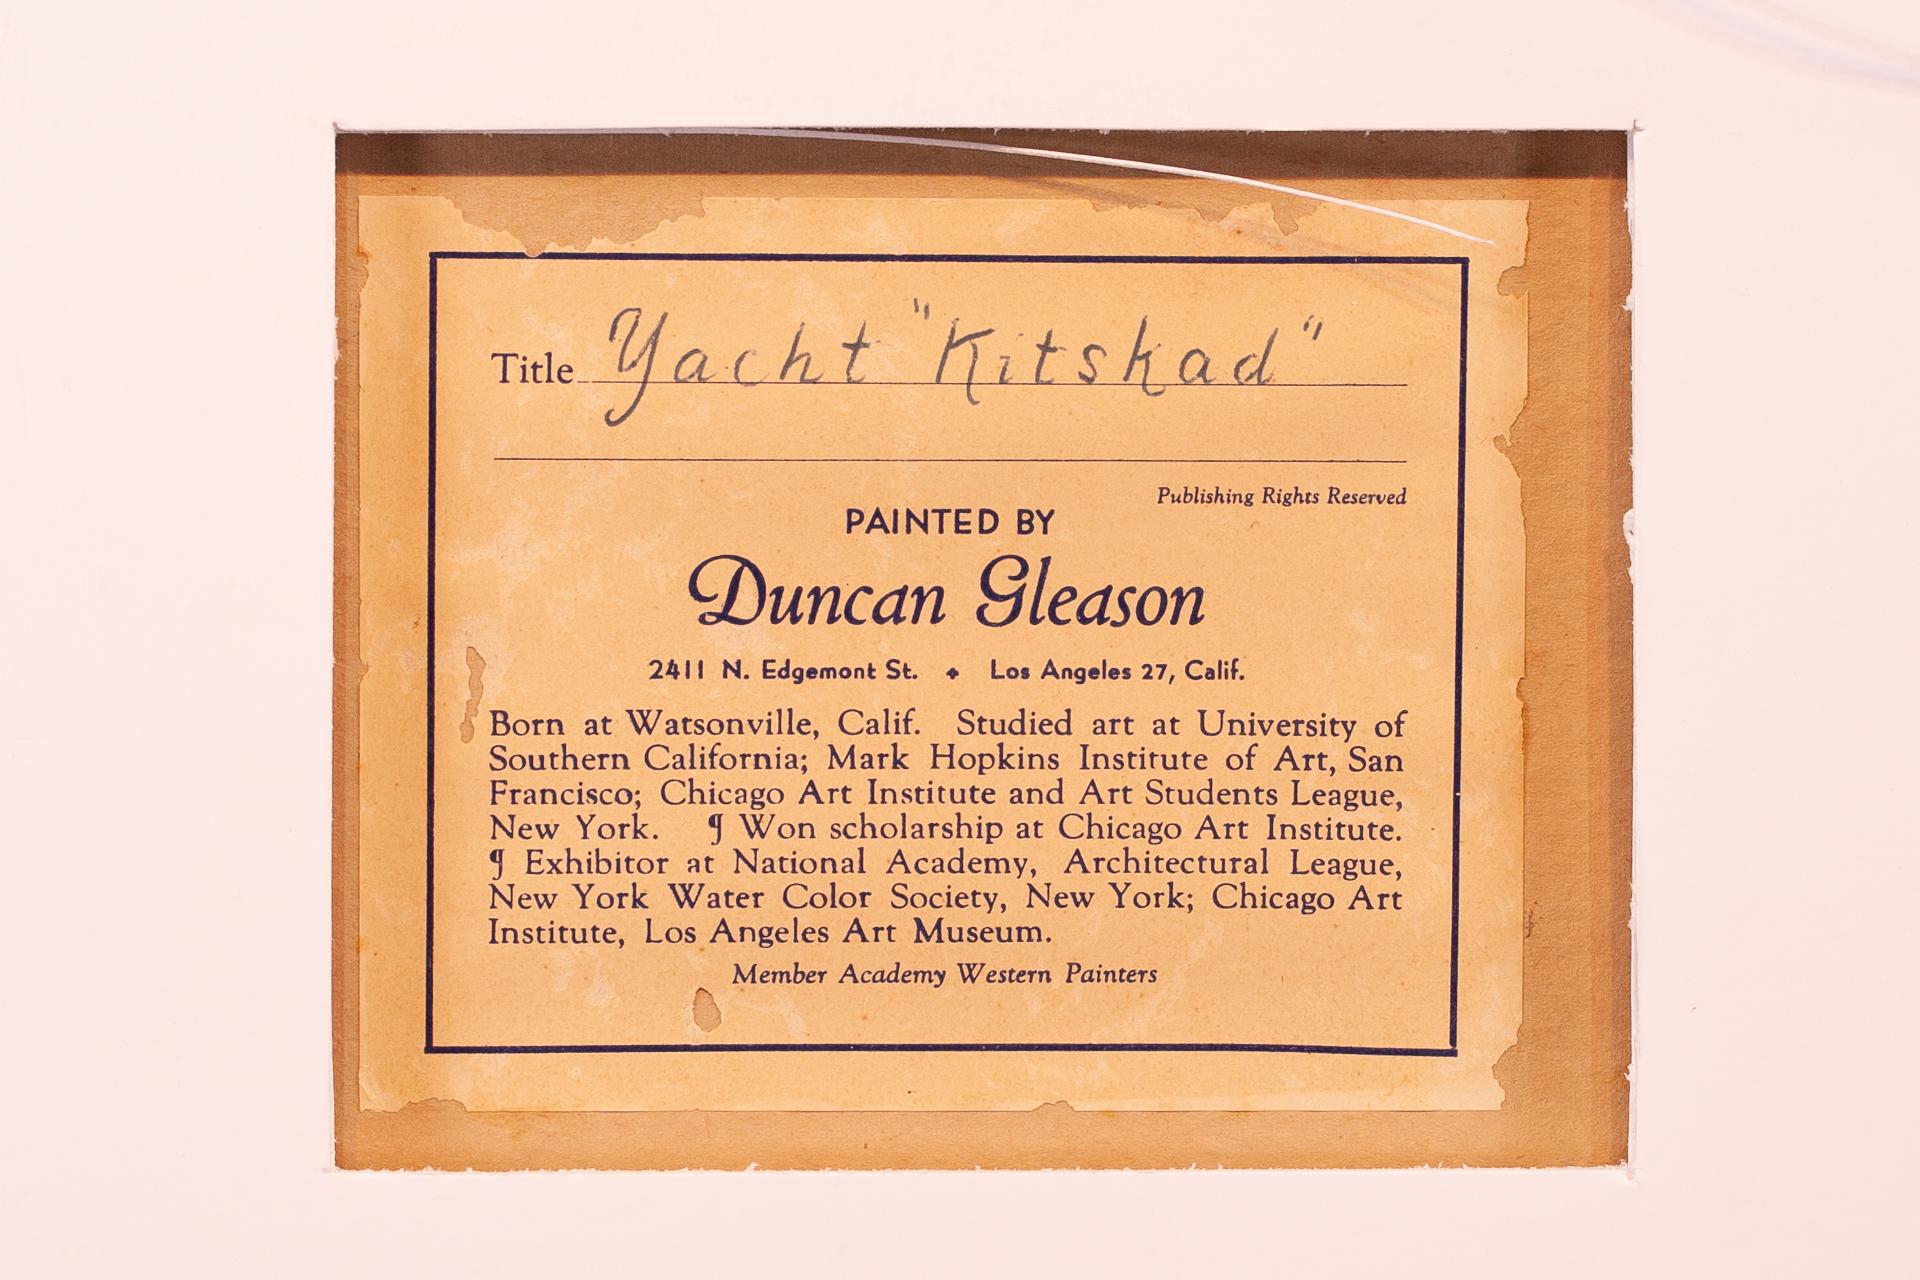 Duncan Gleason lebte in New York und an anderen Orten, um dort zu arbeiten oder zu studieren, aber am wohlsten fühlte er sich in Südkalifornien, und wenn man sich sein Werk ansieht, ist diese Liebe zu diesem Bundesstaat in seinen Gemälden unserer